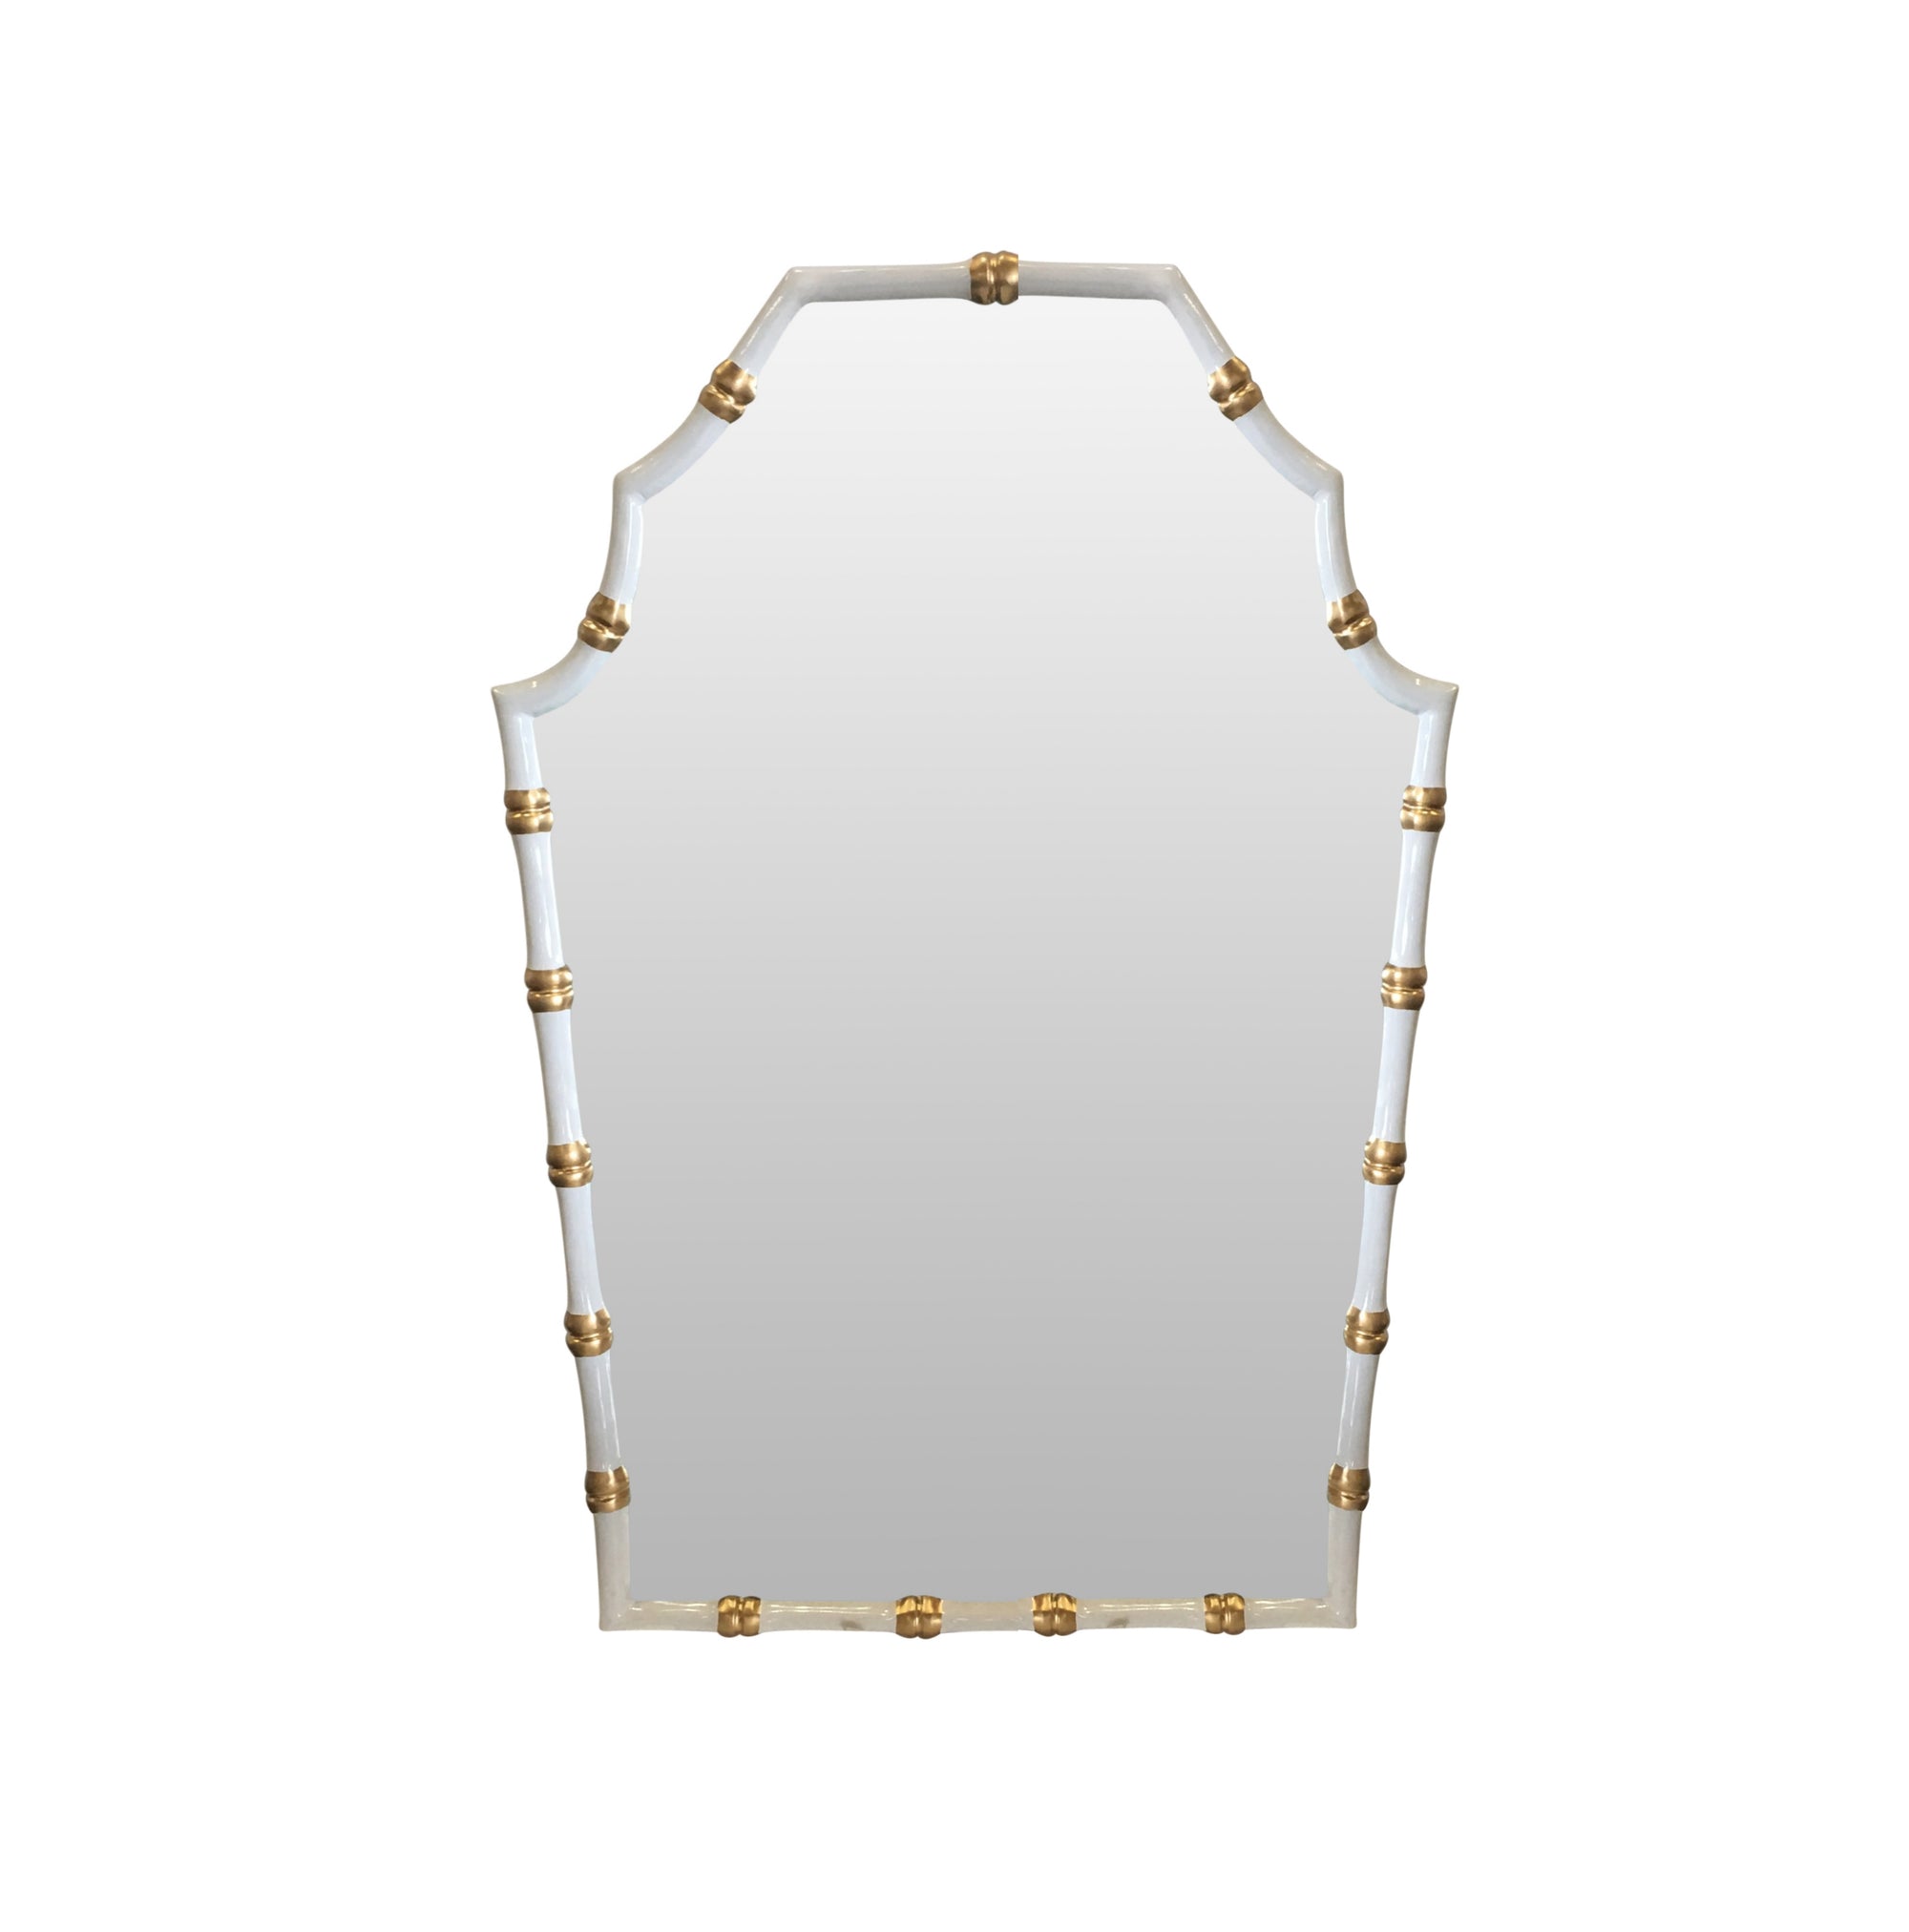 Dana Gibson Bamboo Mirror in White, 2ndQ